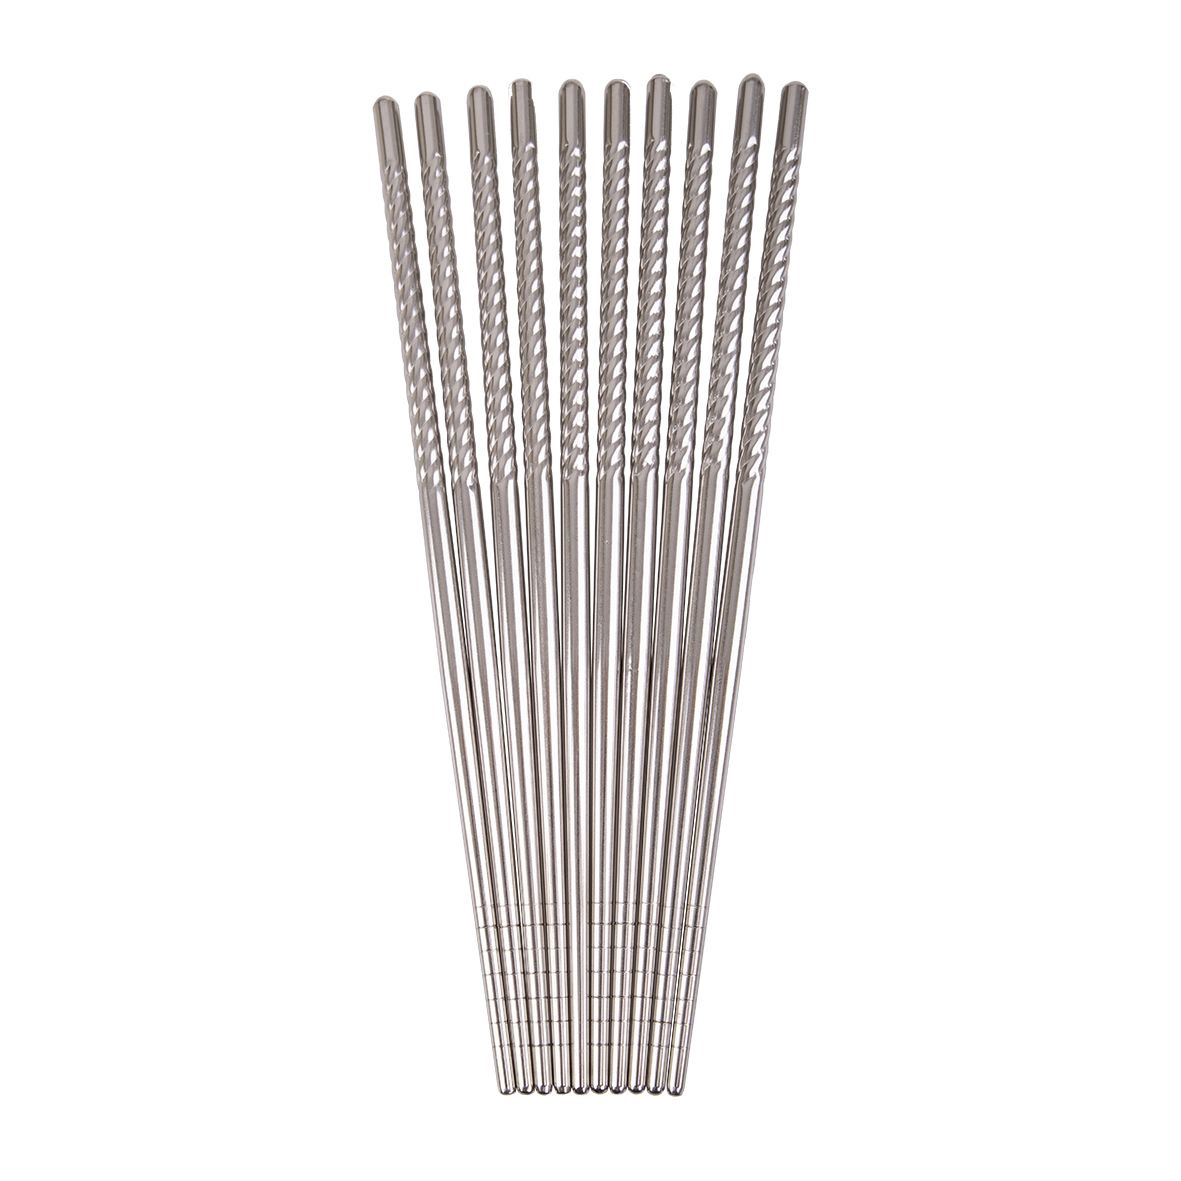 D.line Stainless Steel Chopsticks Set 5